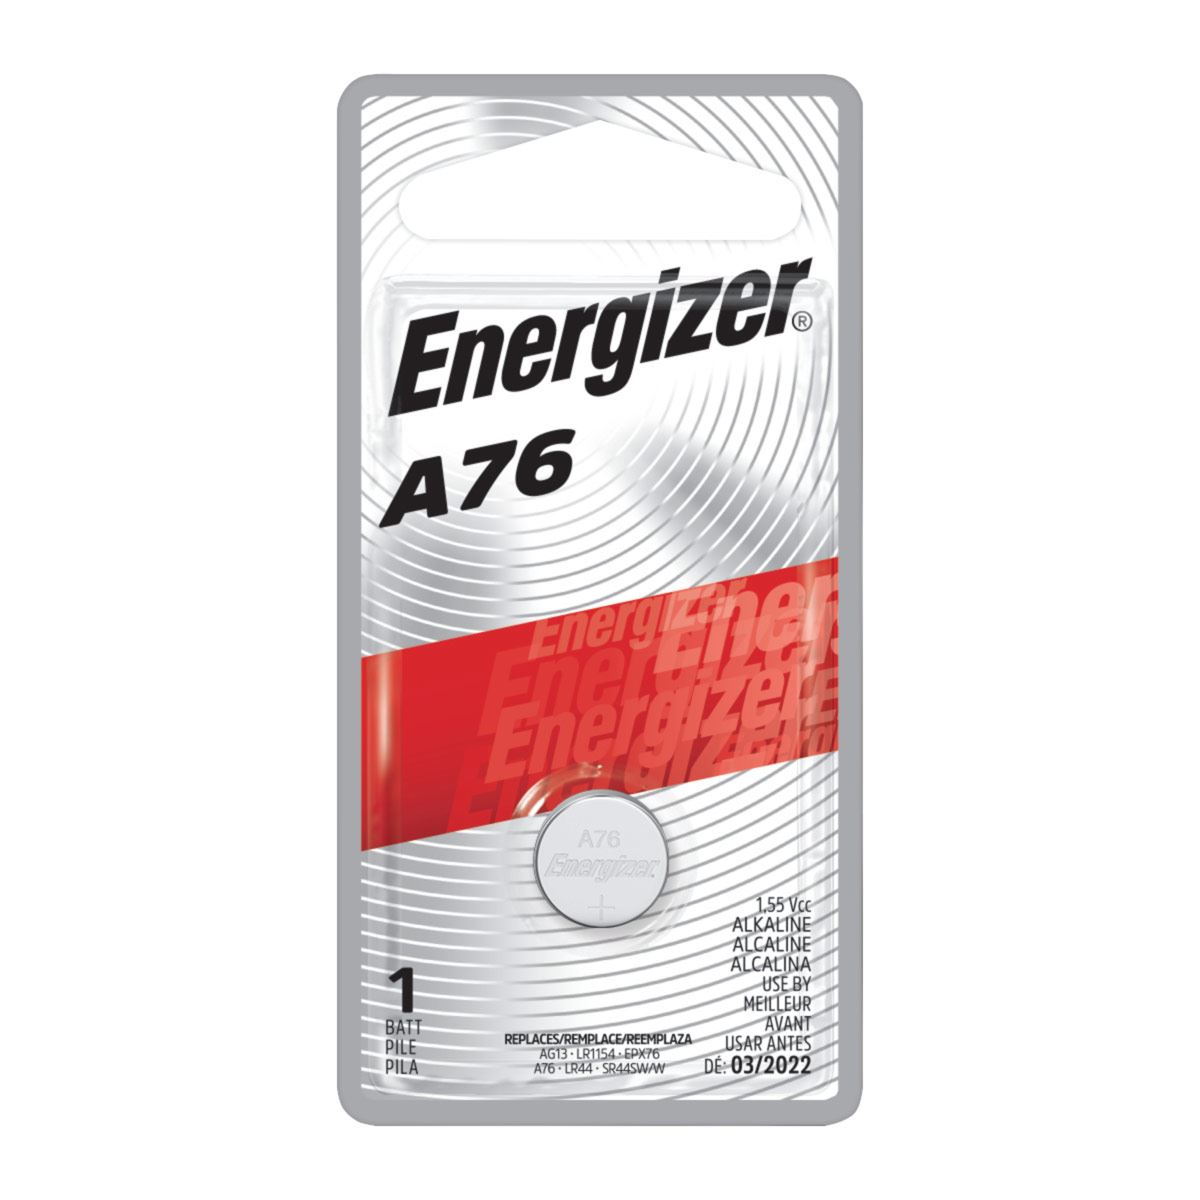 Energizer - Pila 2032 - 15 baterías CR2032 de litio de 3 V, modelo: tienda  de electrónicos